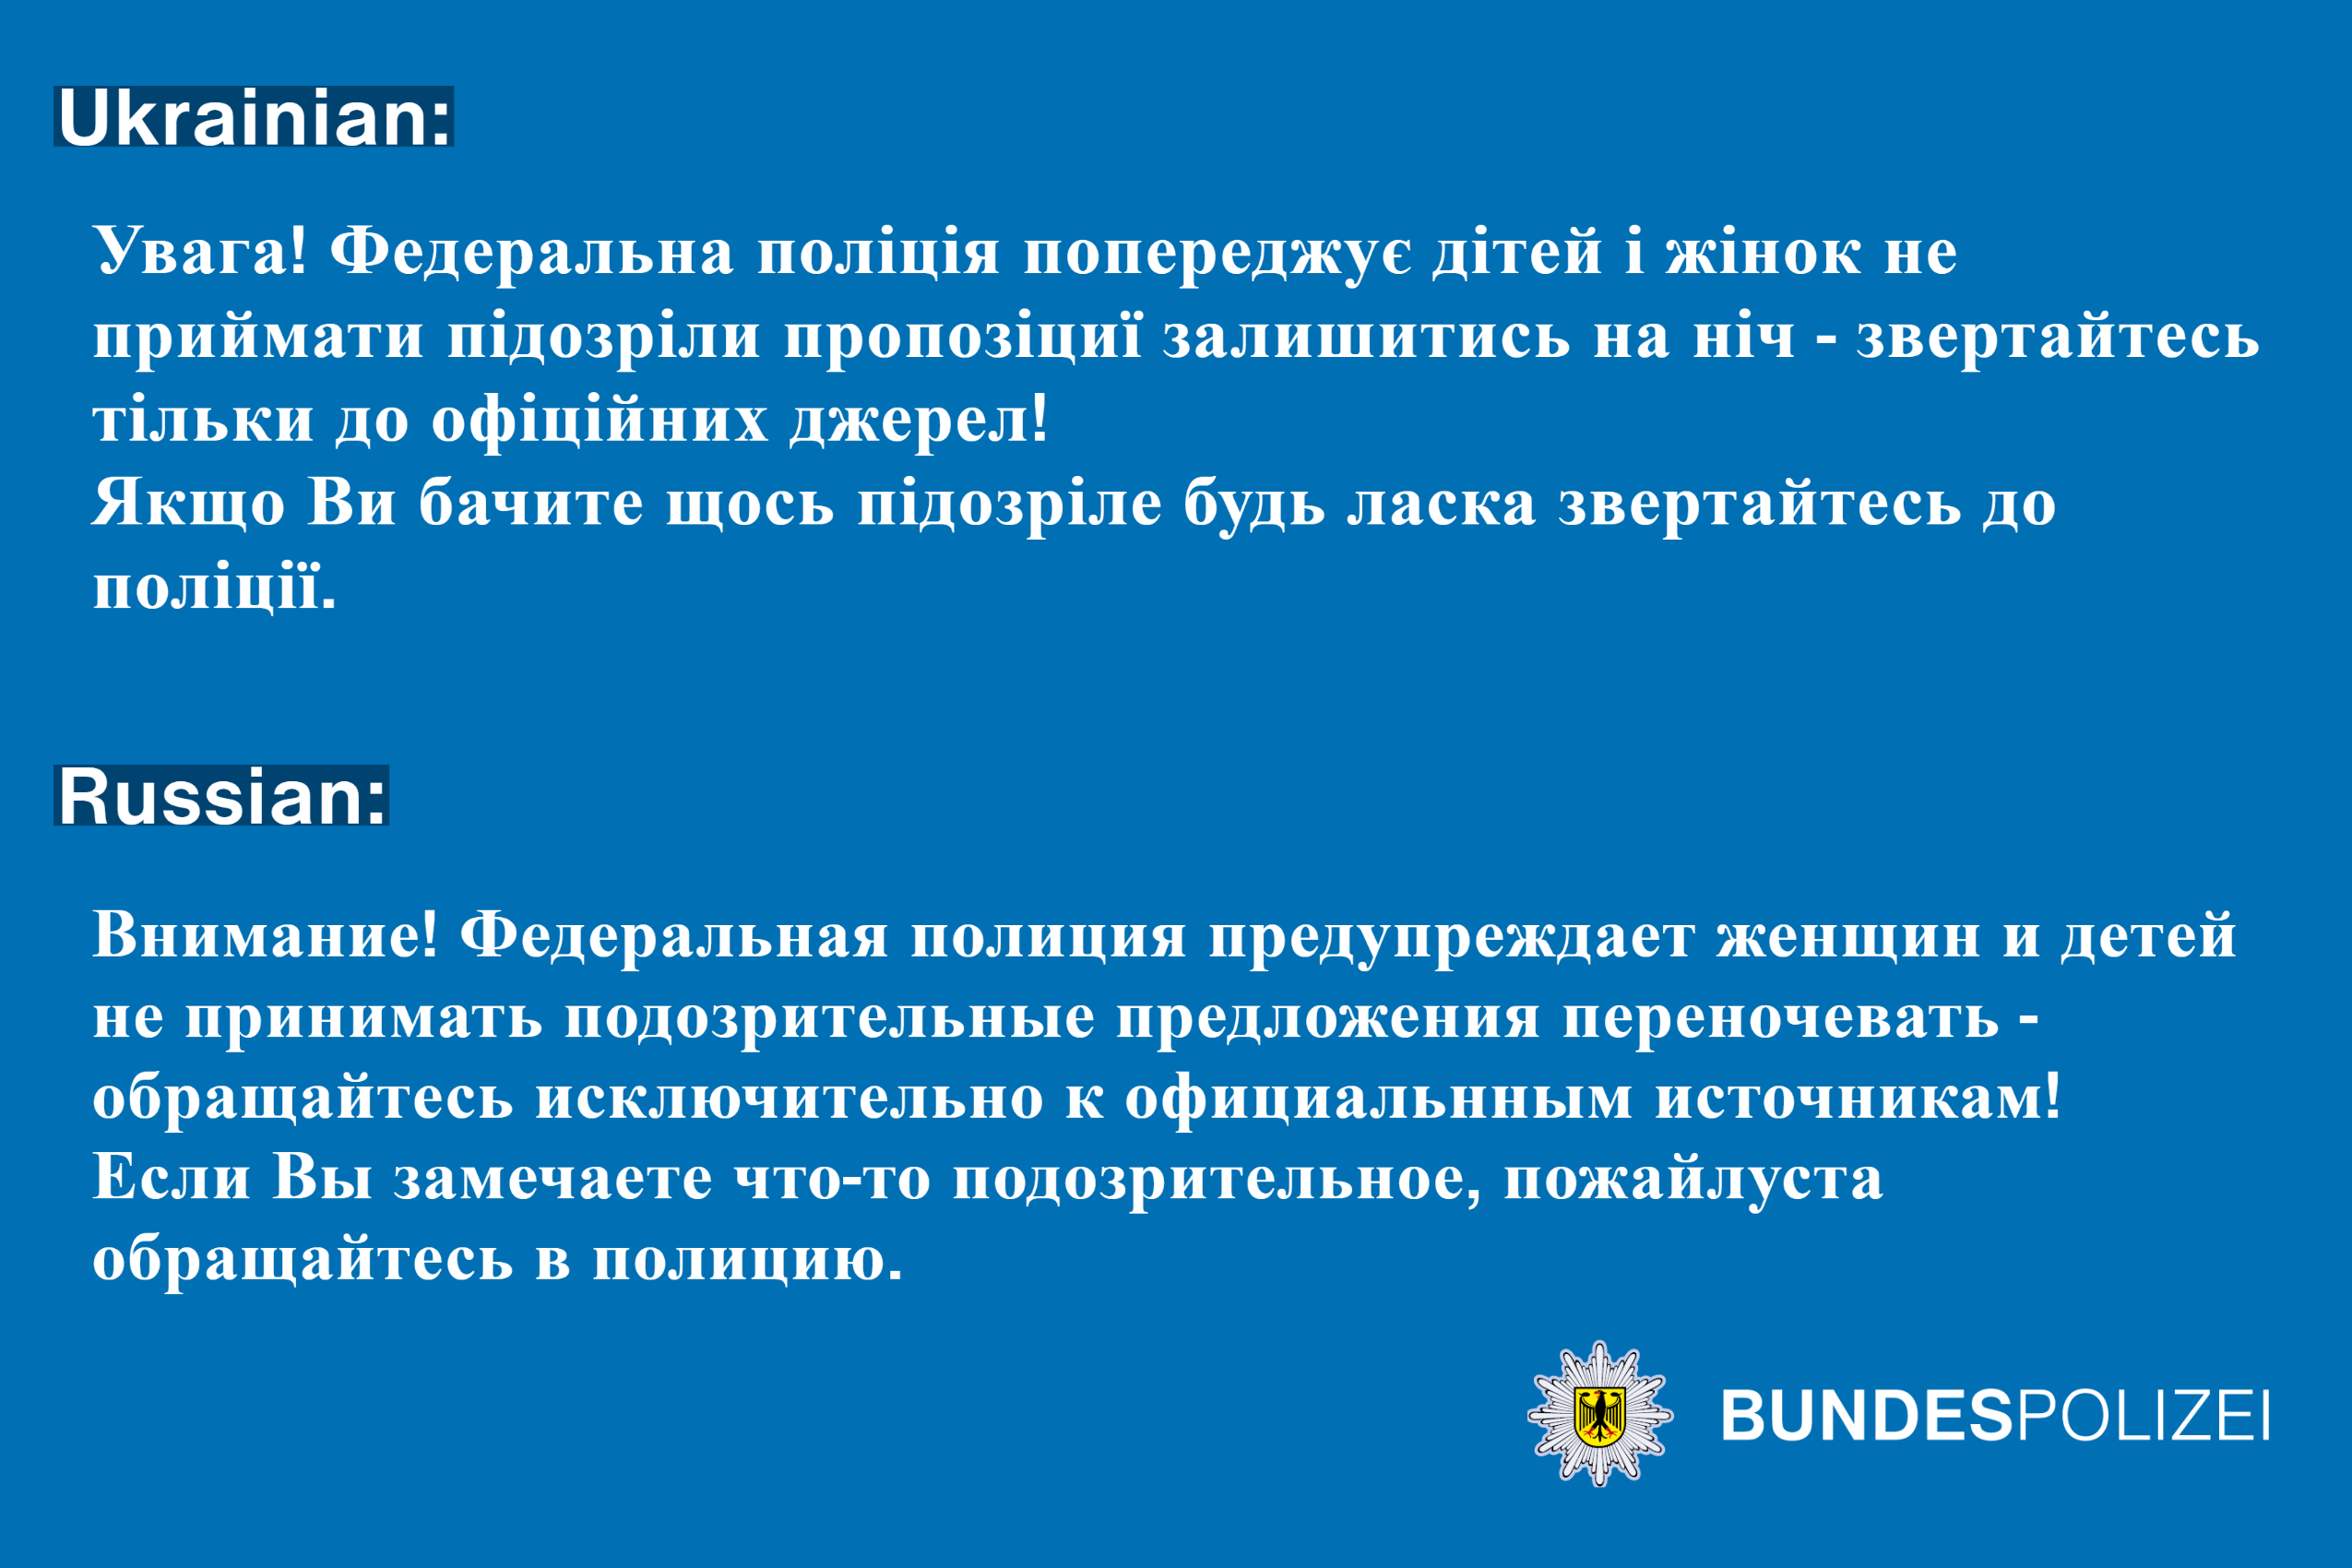 Warnung der Bundespolizei vor auffälligen Übernachtungsangeboten UA RUS